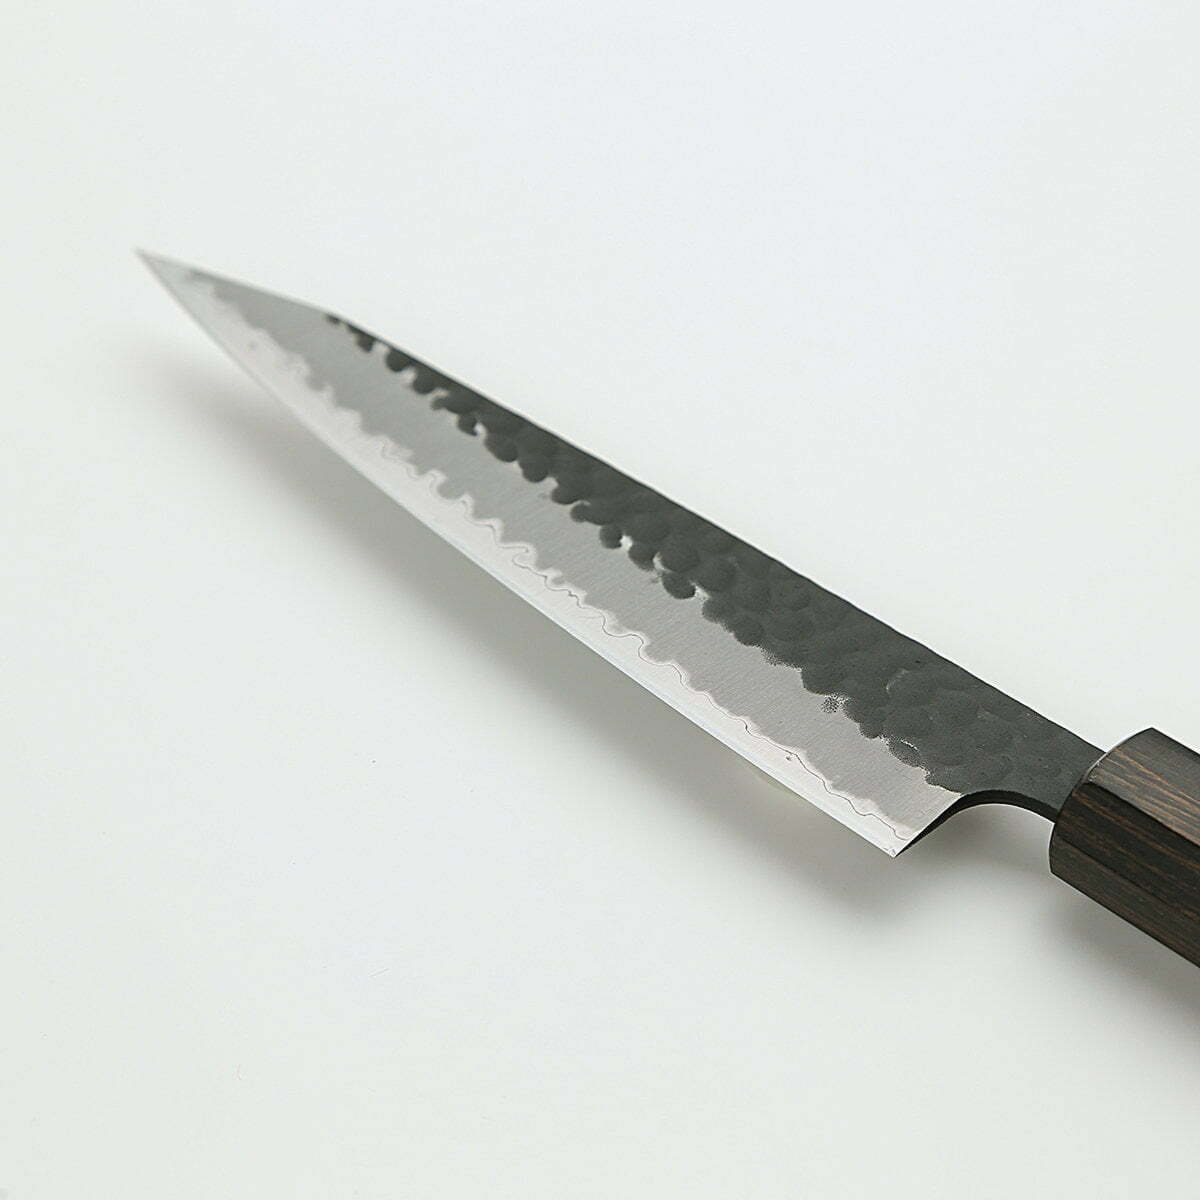 סכין עזר קטנה רב-תכליתית קִּירִיצוּקֶה פֶּטִי 125מ״מ מחוזקת 3 שכבות: פלדת פחמן יפנית מתקדמת מסוג Aogami Super עטופה פלדת אל-חלד גימור קורואיצ׳י שחור עם ריקוע פטיש ג׳יקו סאקאיי יפן